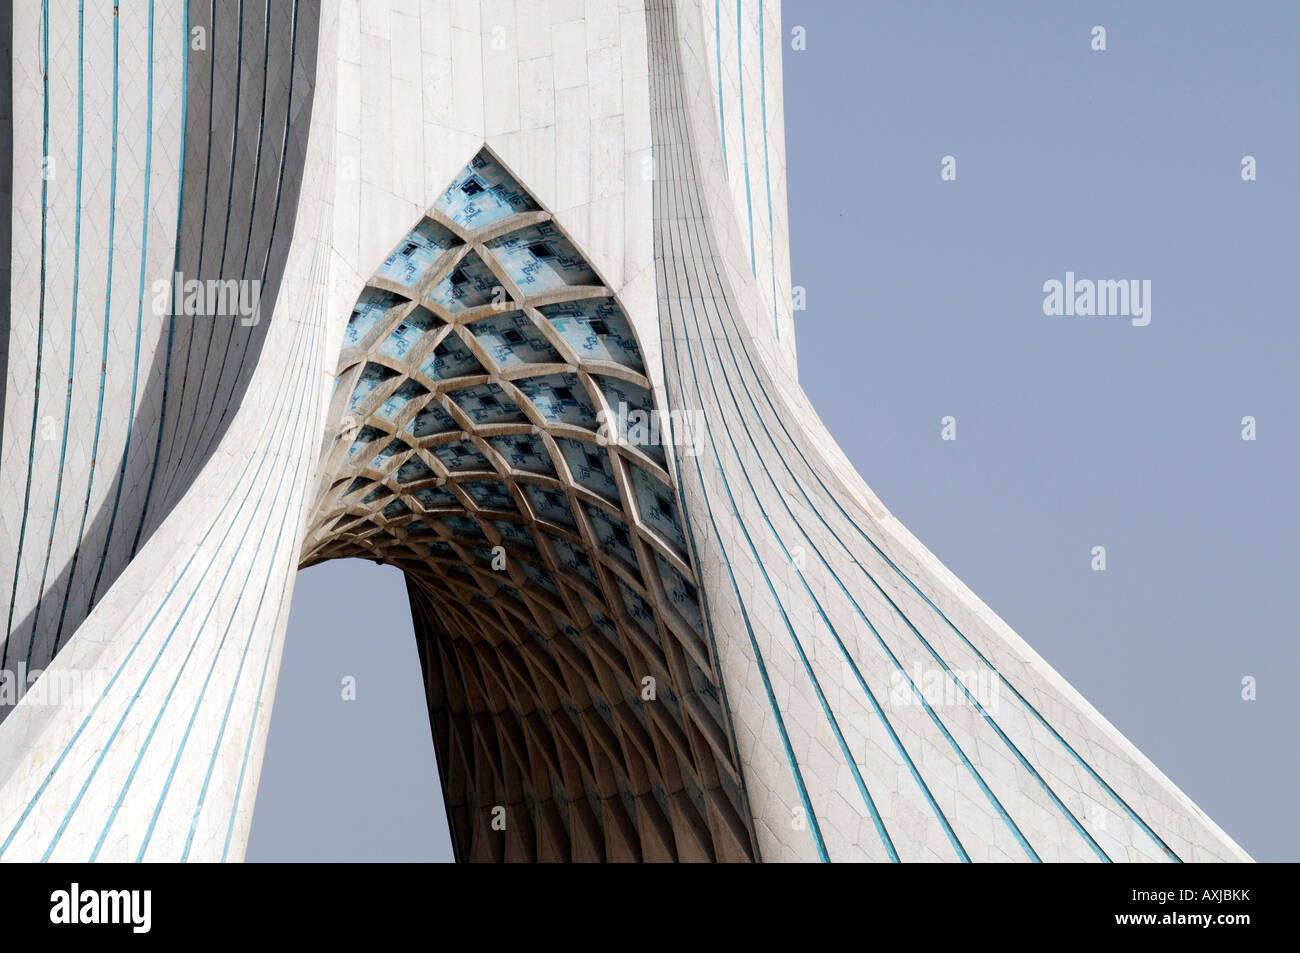 Das Azadi-Monument ist ein bedeutendes architektonisches Wahrzeichen, gebaut von der ehemaligen Schah-Regimes, befindet sich im westlichen Teheran, Iran Stockfoto